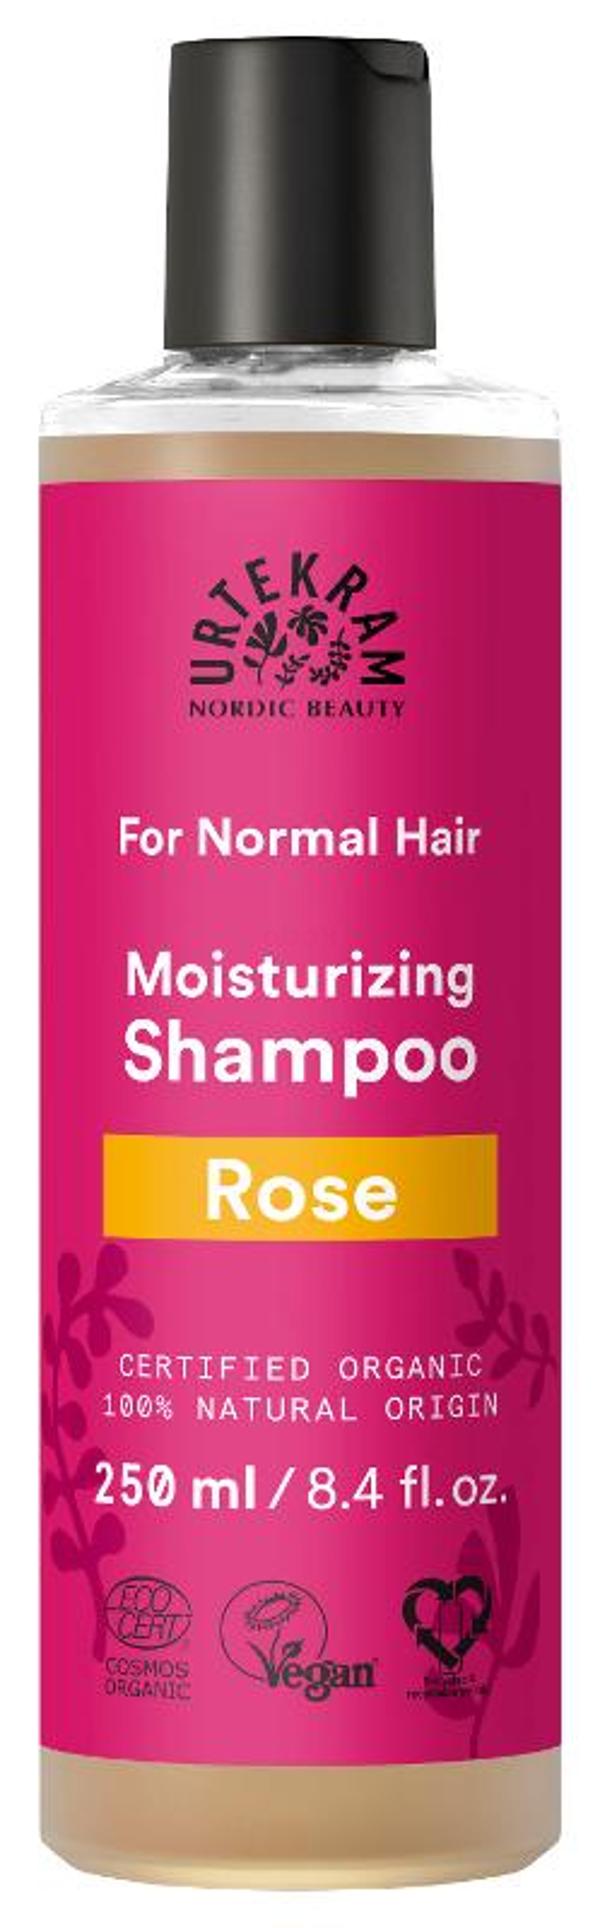 Produktfoto zu Rosen Shampoo für normales Haar 250ml